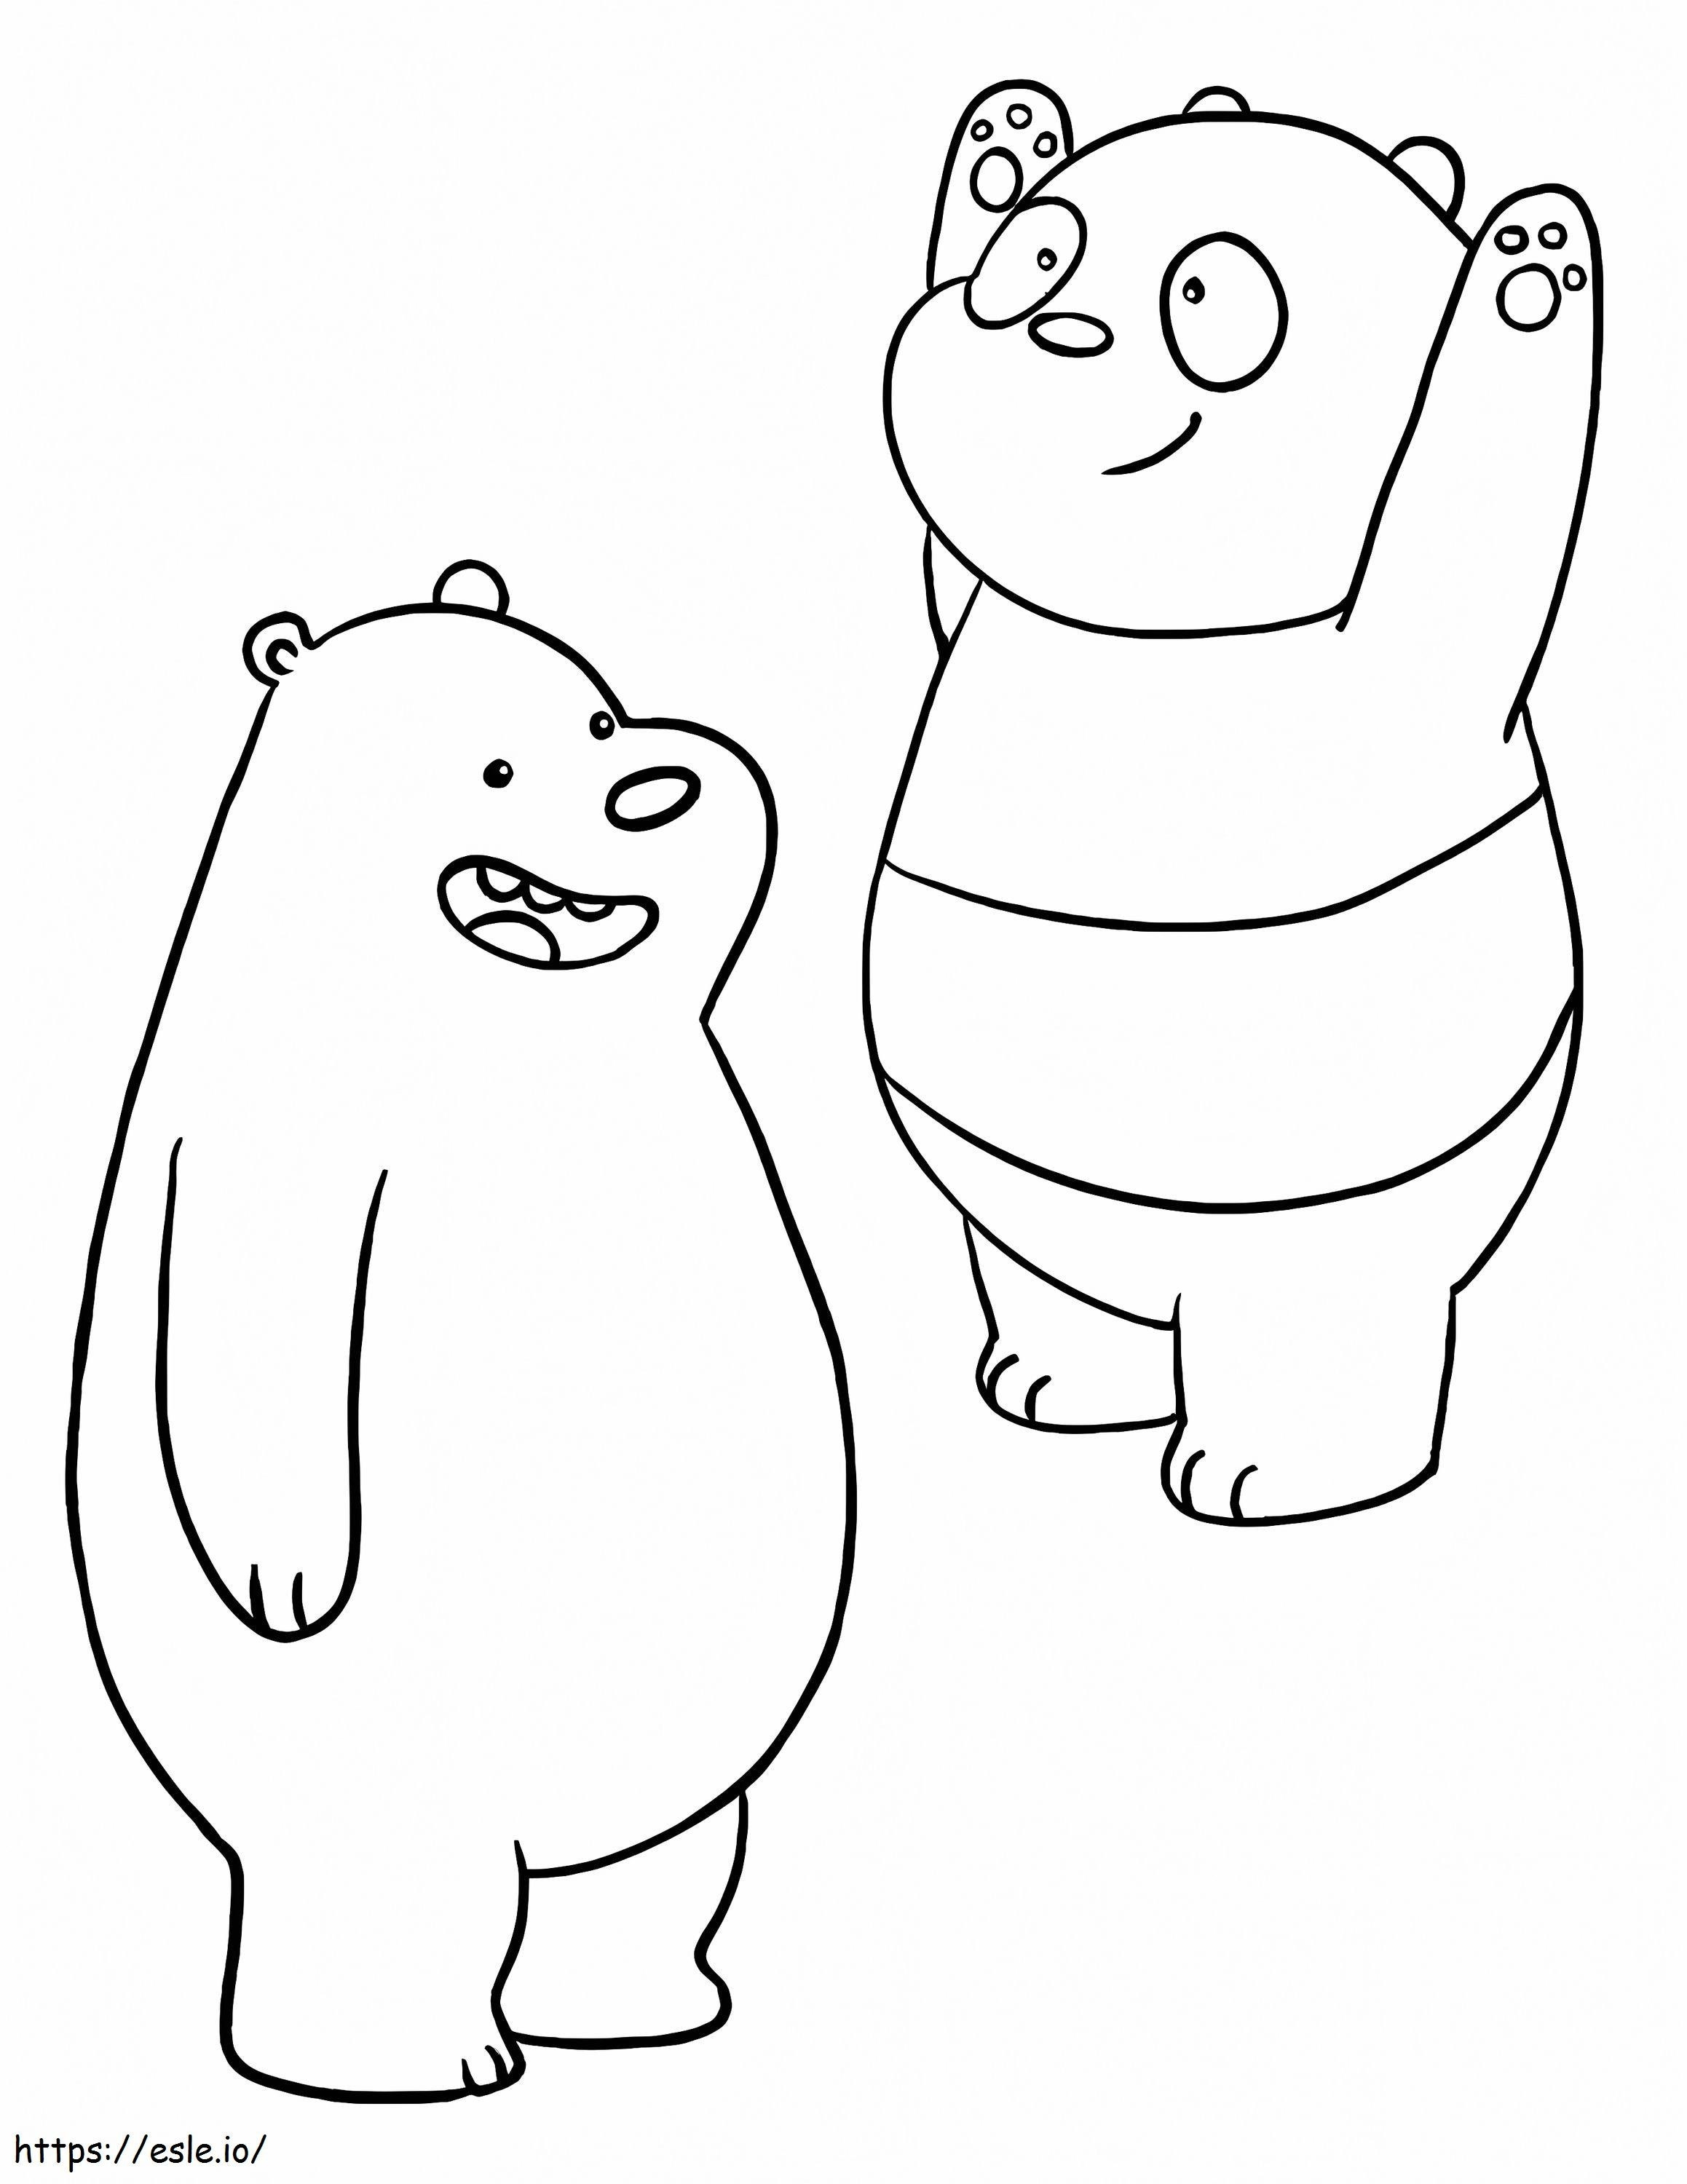 Boz Ayı ve Panda boyama